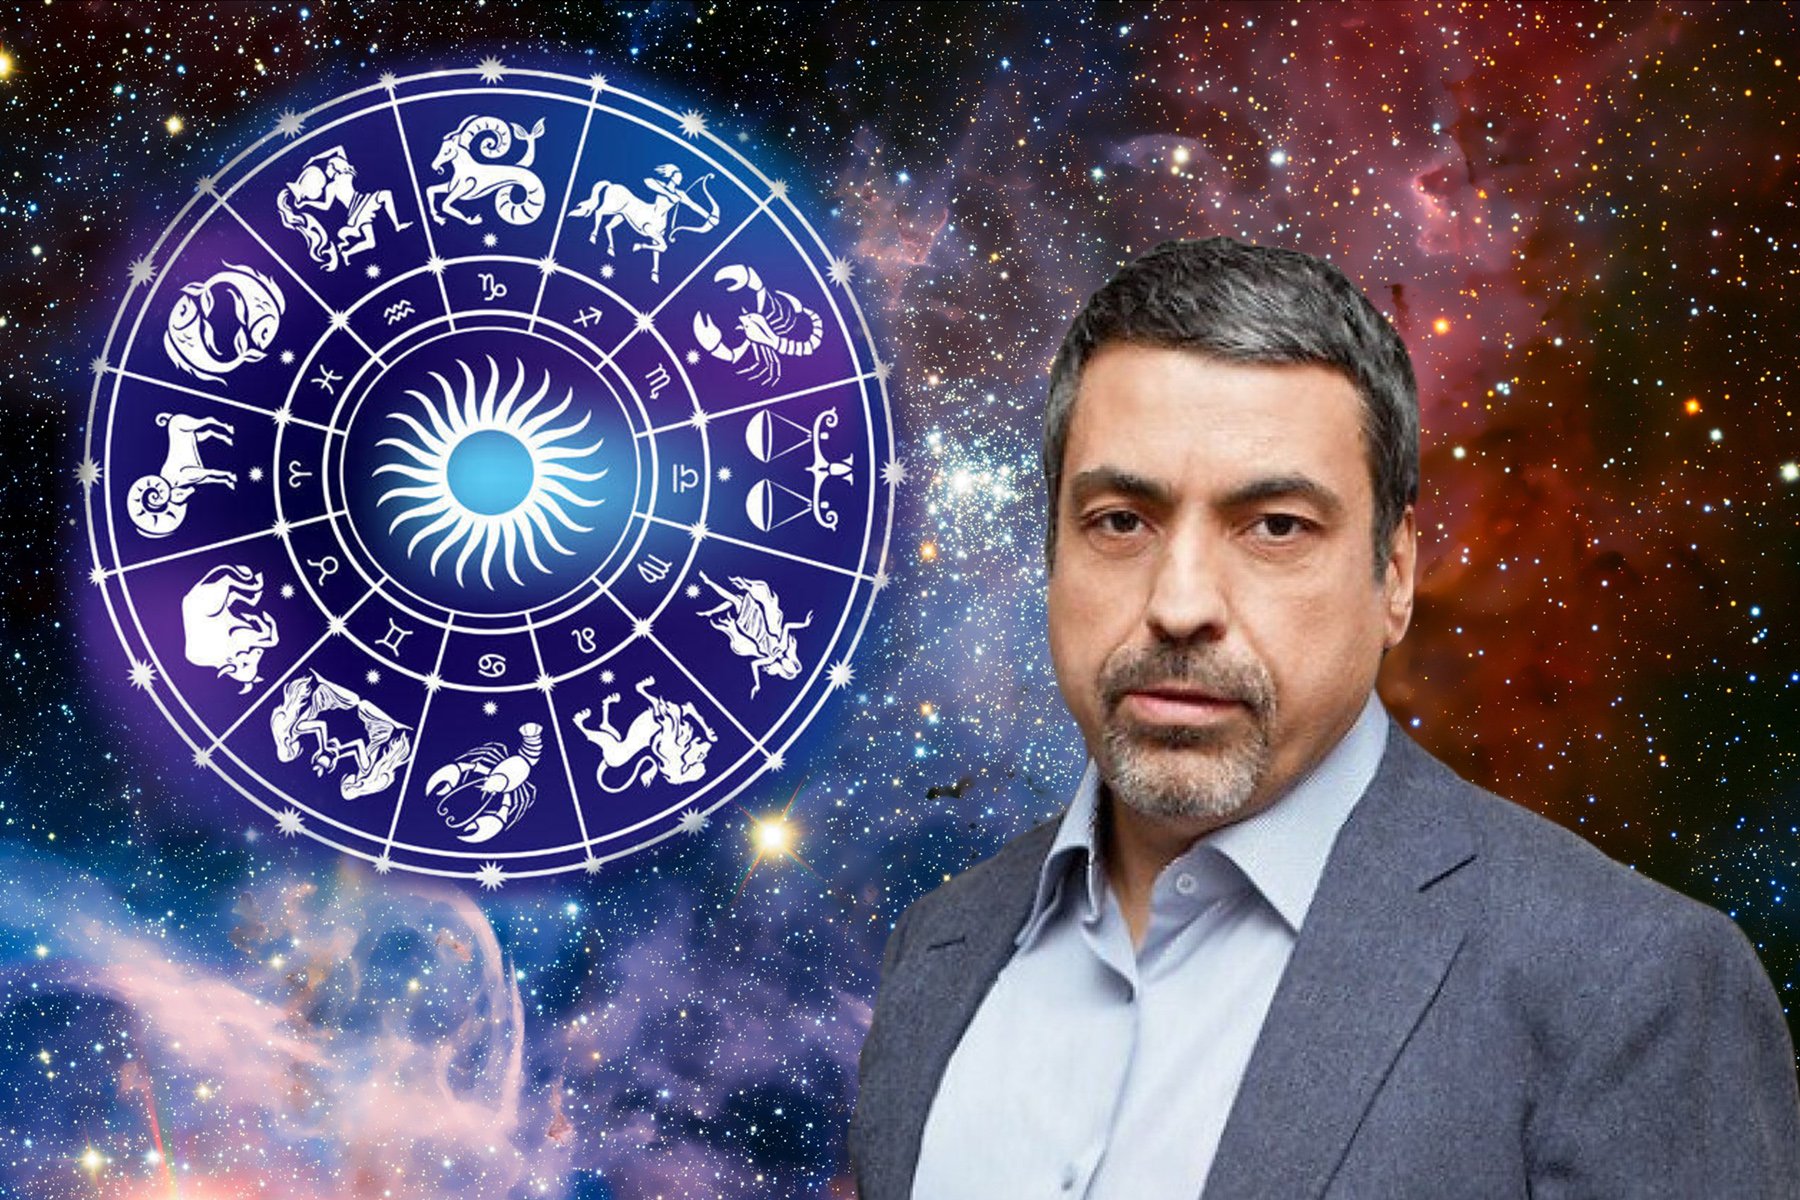 Павел Глоба гороскоп удачи 2020 год для знаков Зодиака: кто в списке  избранных